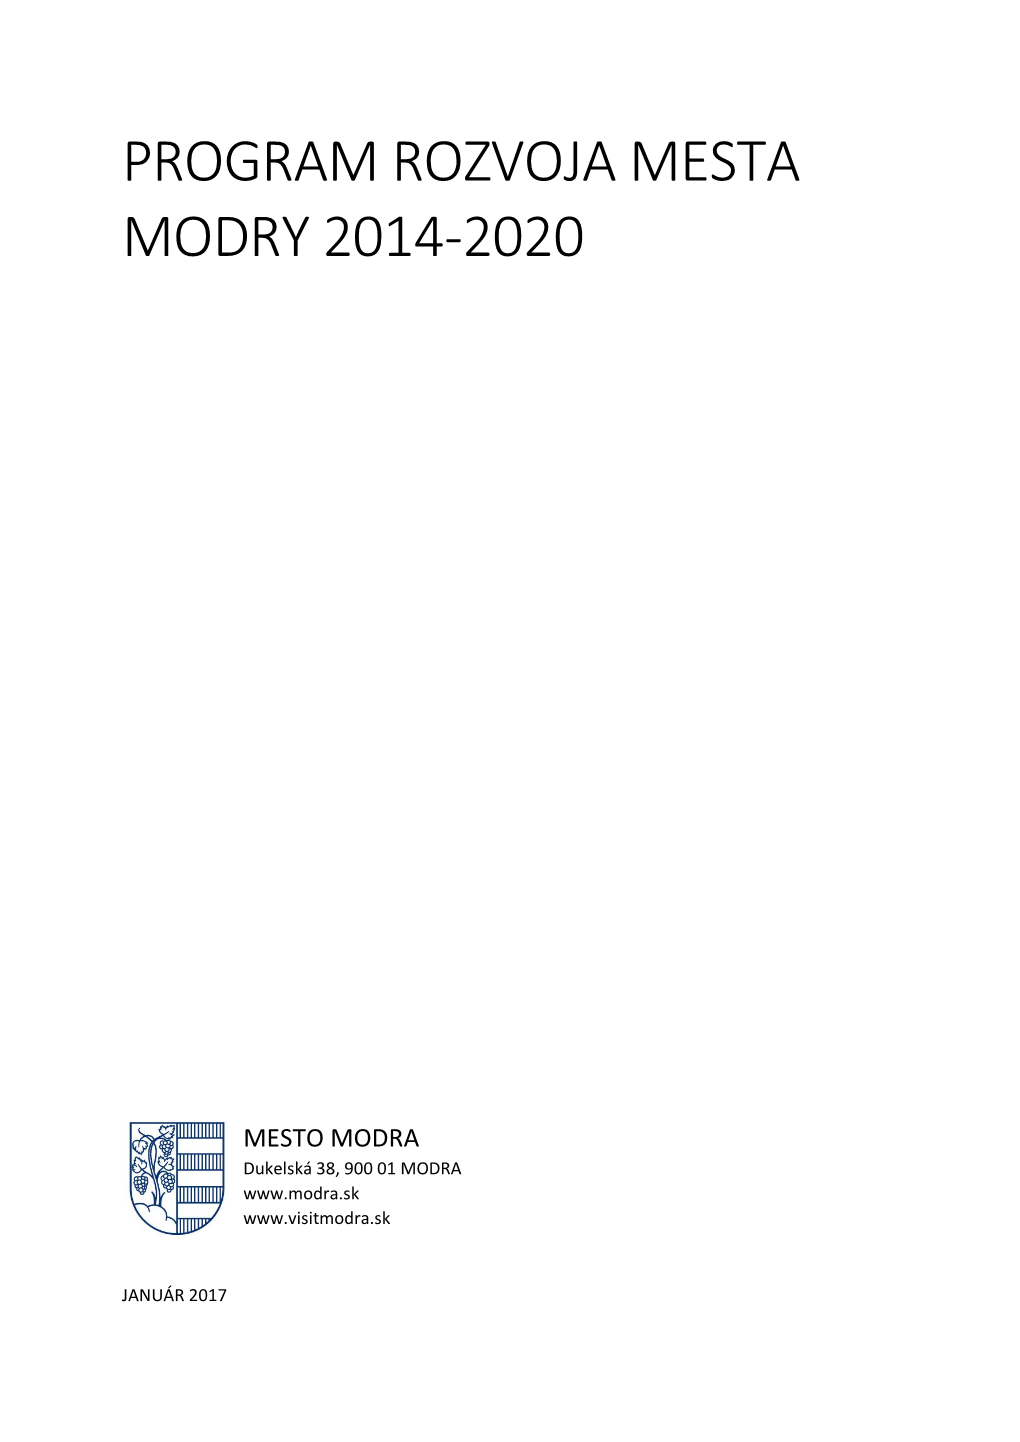 Program Rozvoja Mesta Modry 2014-2020